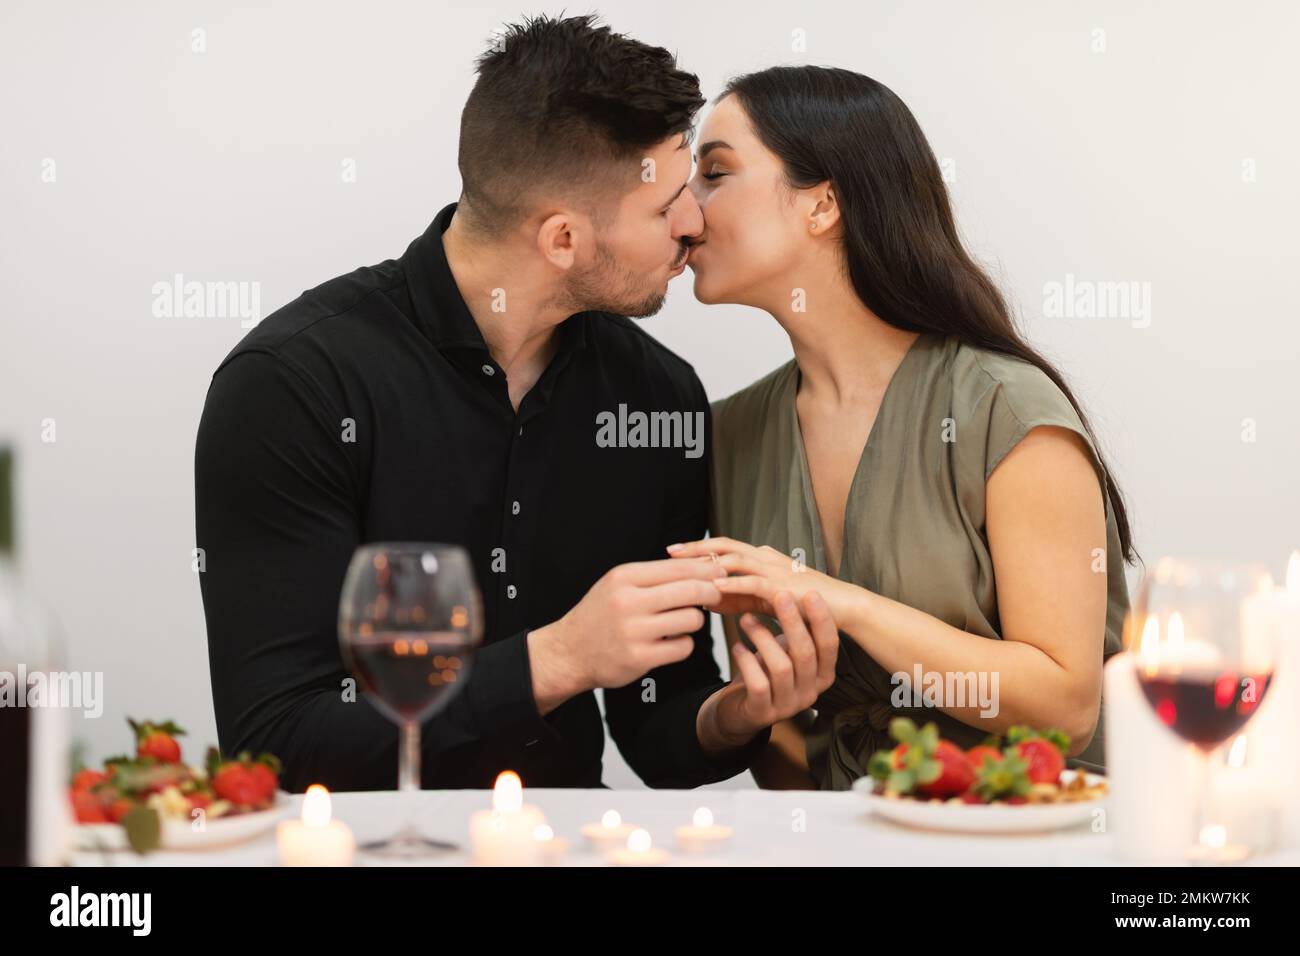 Loving couple kissing while have engagement celebration Stock Photo